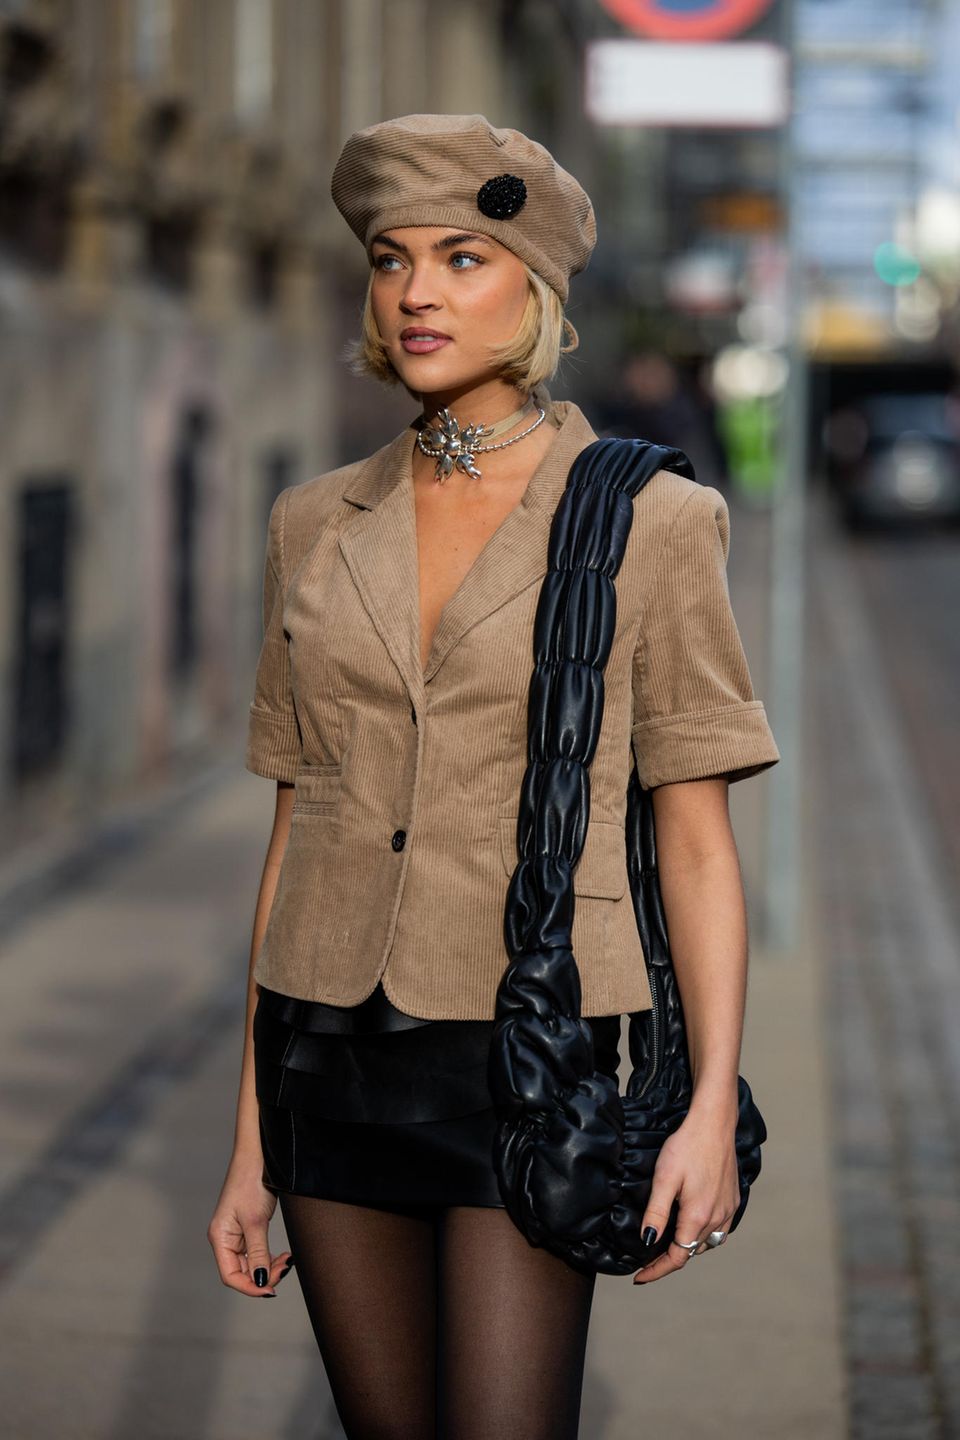 In diesem Look strahlt Emilia Silberg pure Eleganz aus! Die Influencerin trägt ein beigefarbenes Hemd aus Cord und kombiniert dazu ein perfekt abgestimmtes Barett. Abgerundet wird ihr Outfit mit einem schwarzen Minirock, einer schwarzen, gesteppten Tasche und einer extravaganten Kette.